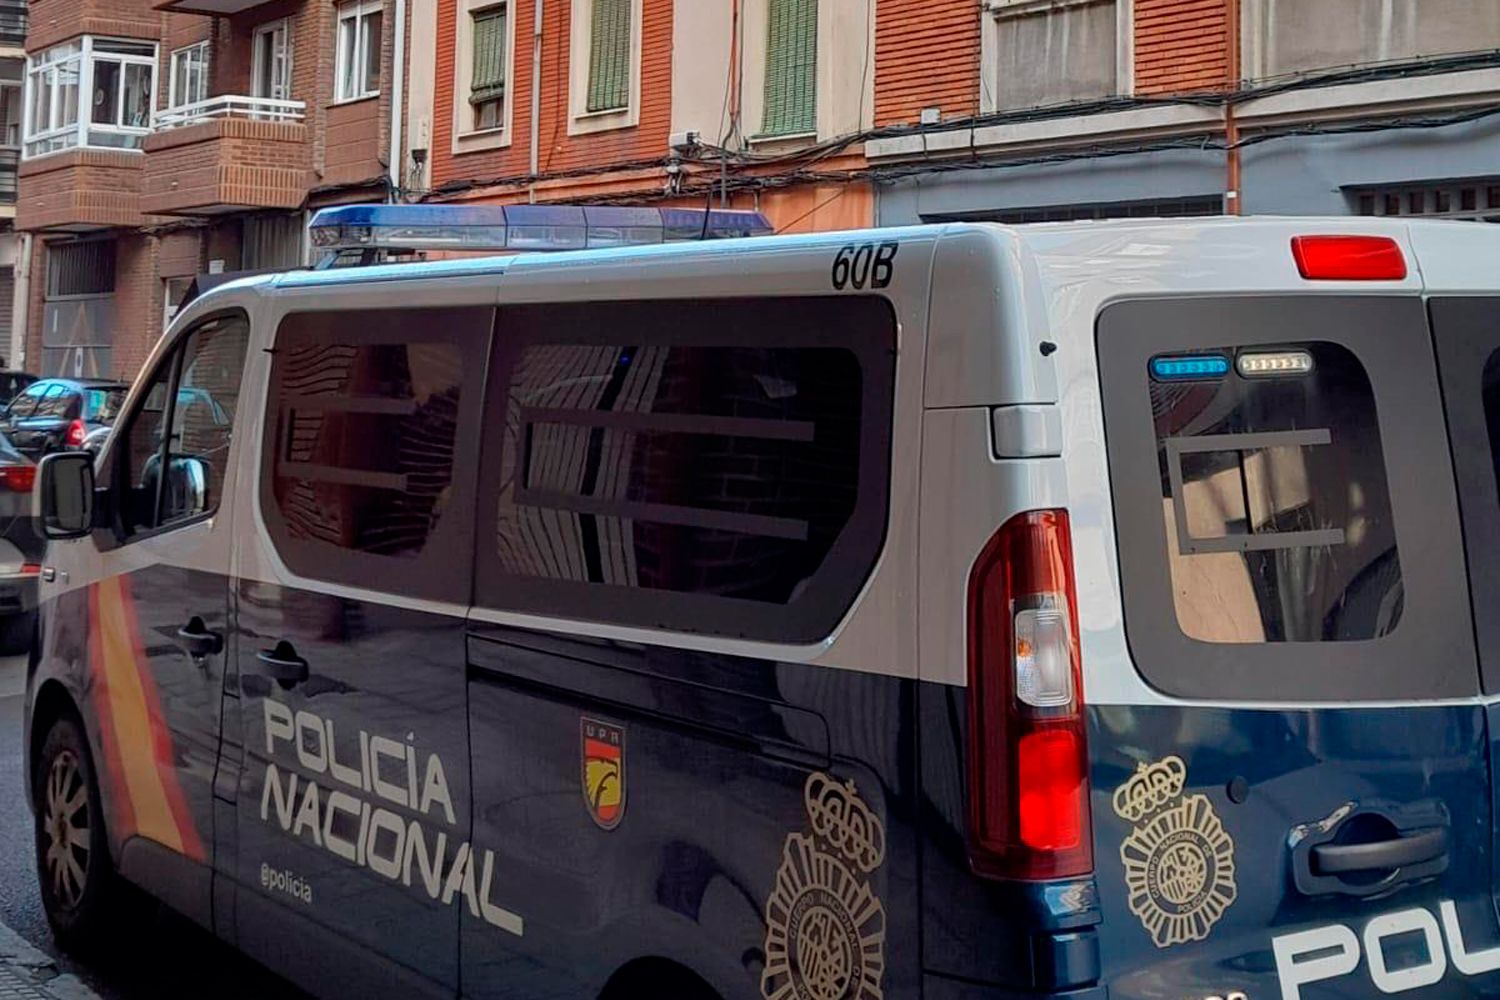 Furgón de la Policía Nacional | Desmantelan banda especializada en robos de viviendas en León y a nivel nacional